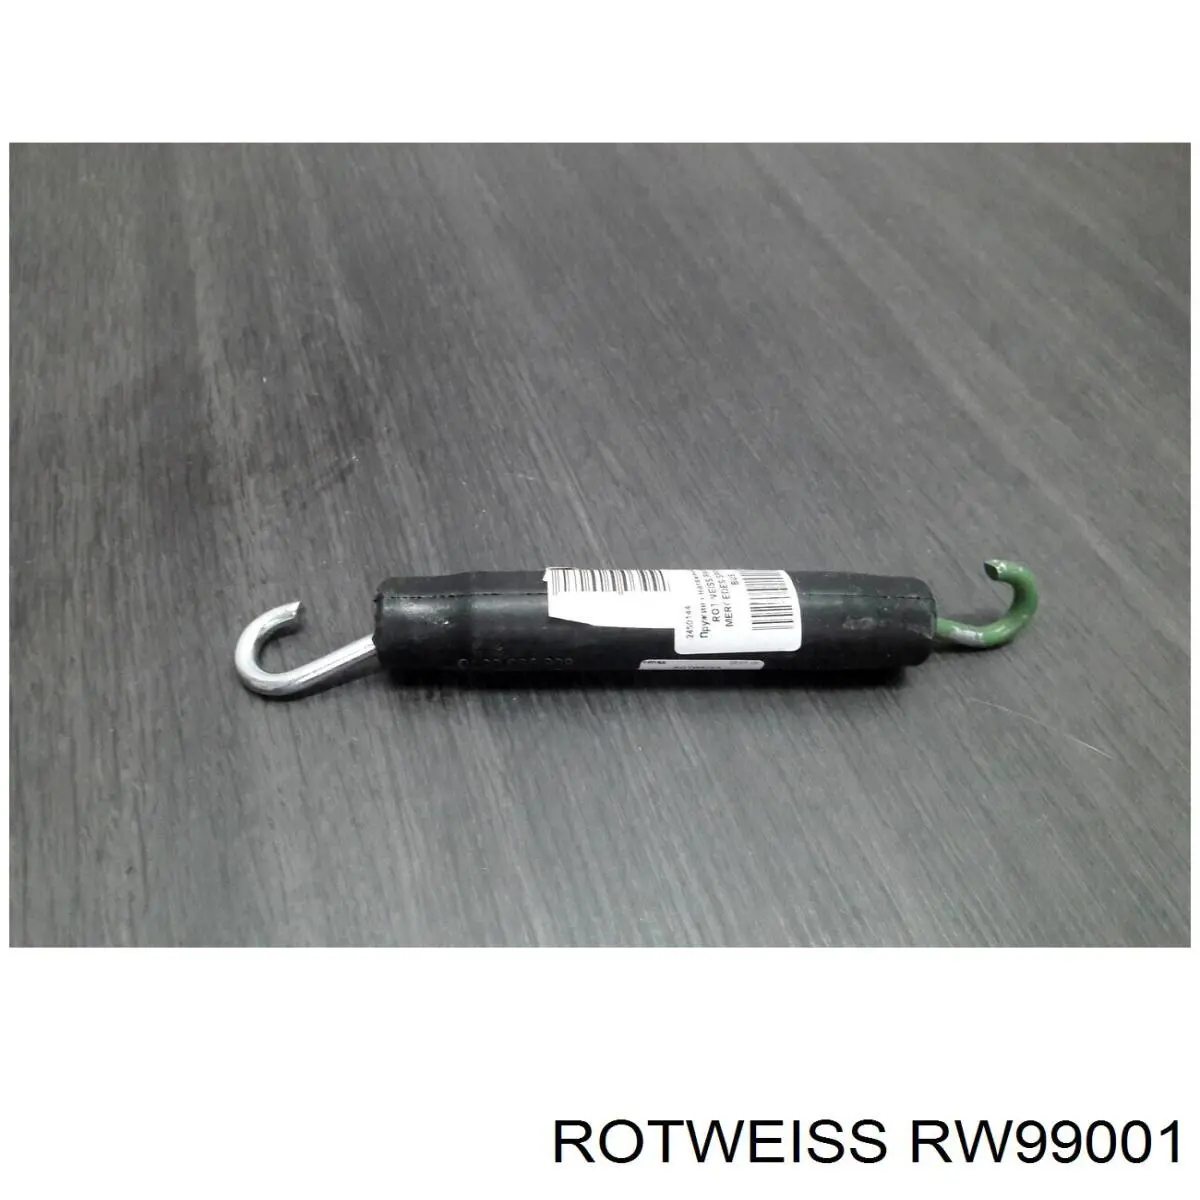 RW99001 Rotweiss mola de reguladora de tensão da correia de transmissão